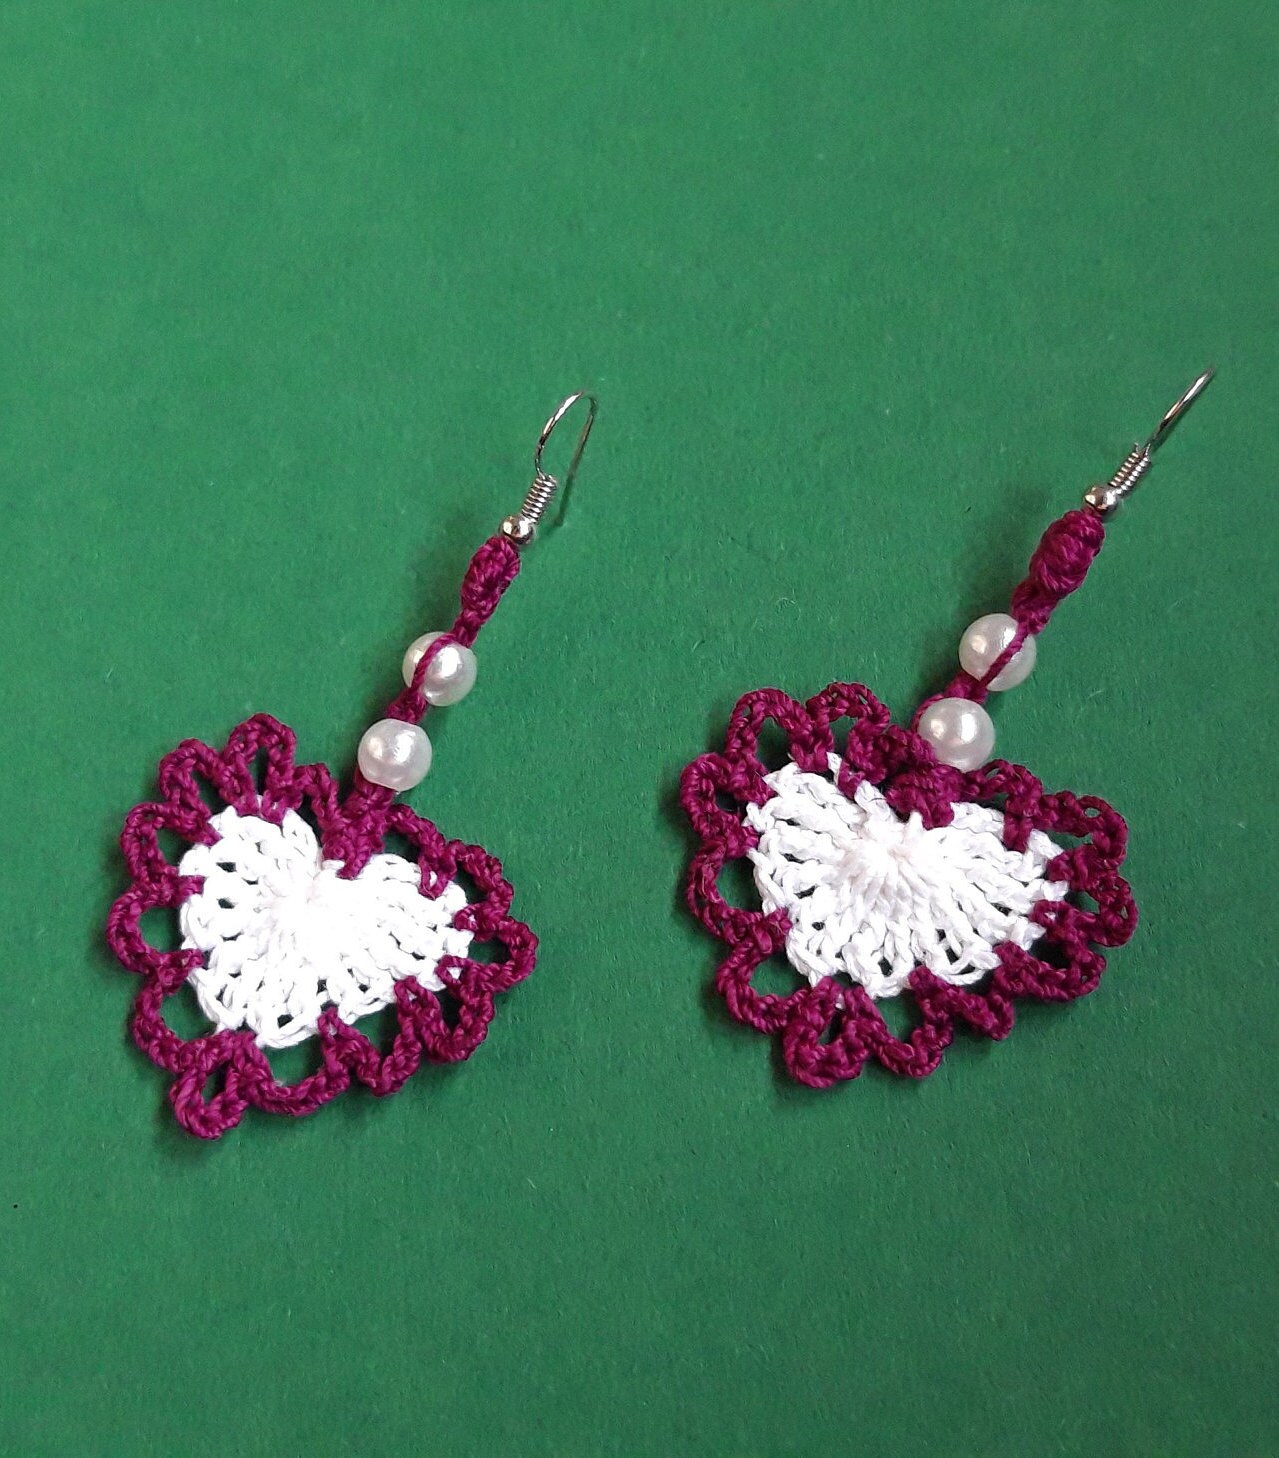 Ohrringe Herz Gehäkelt Lila-Weiß von crochet4angel